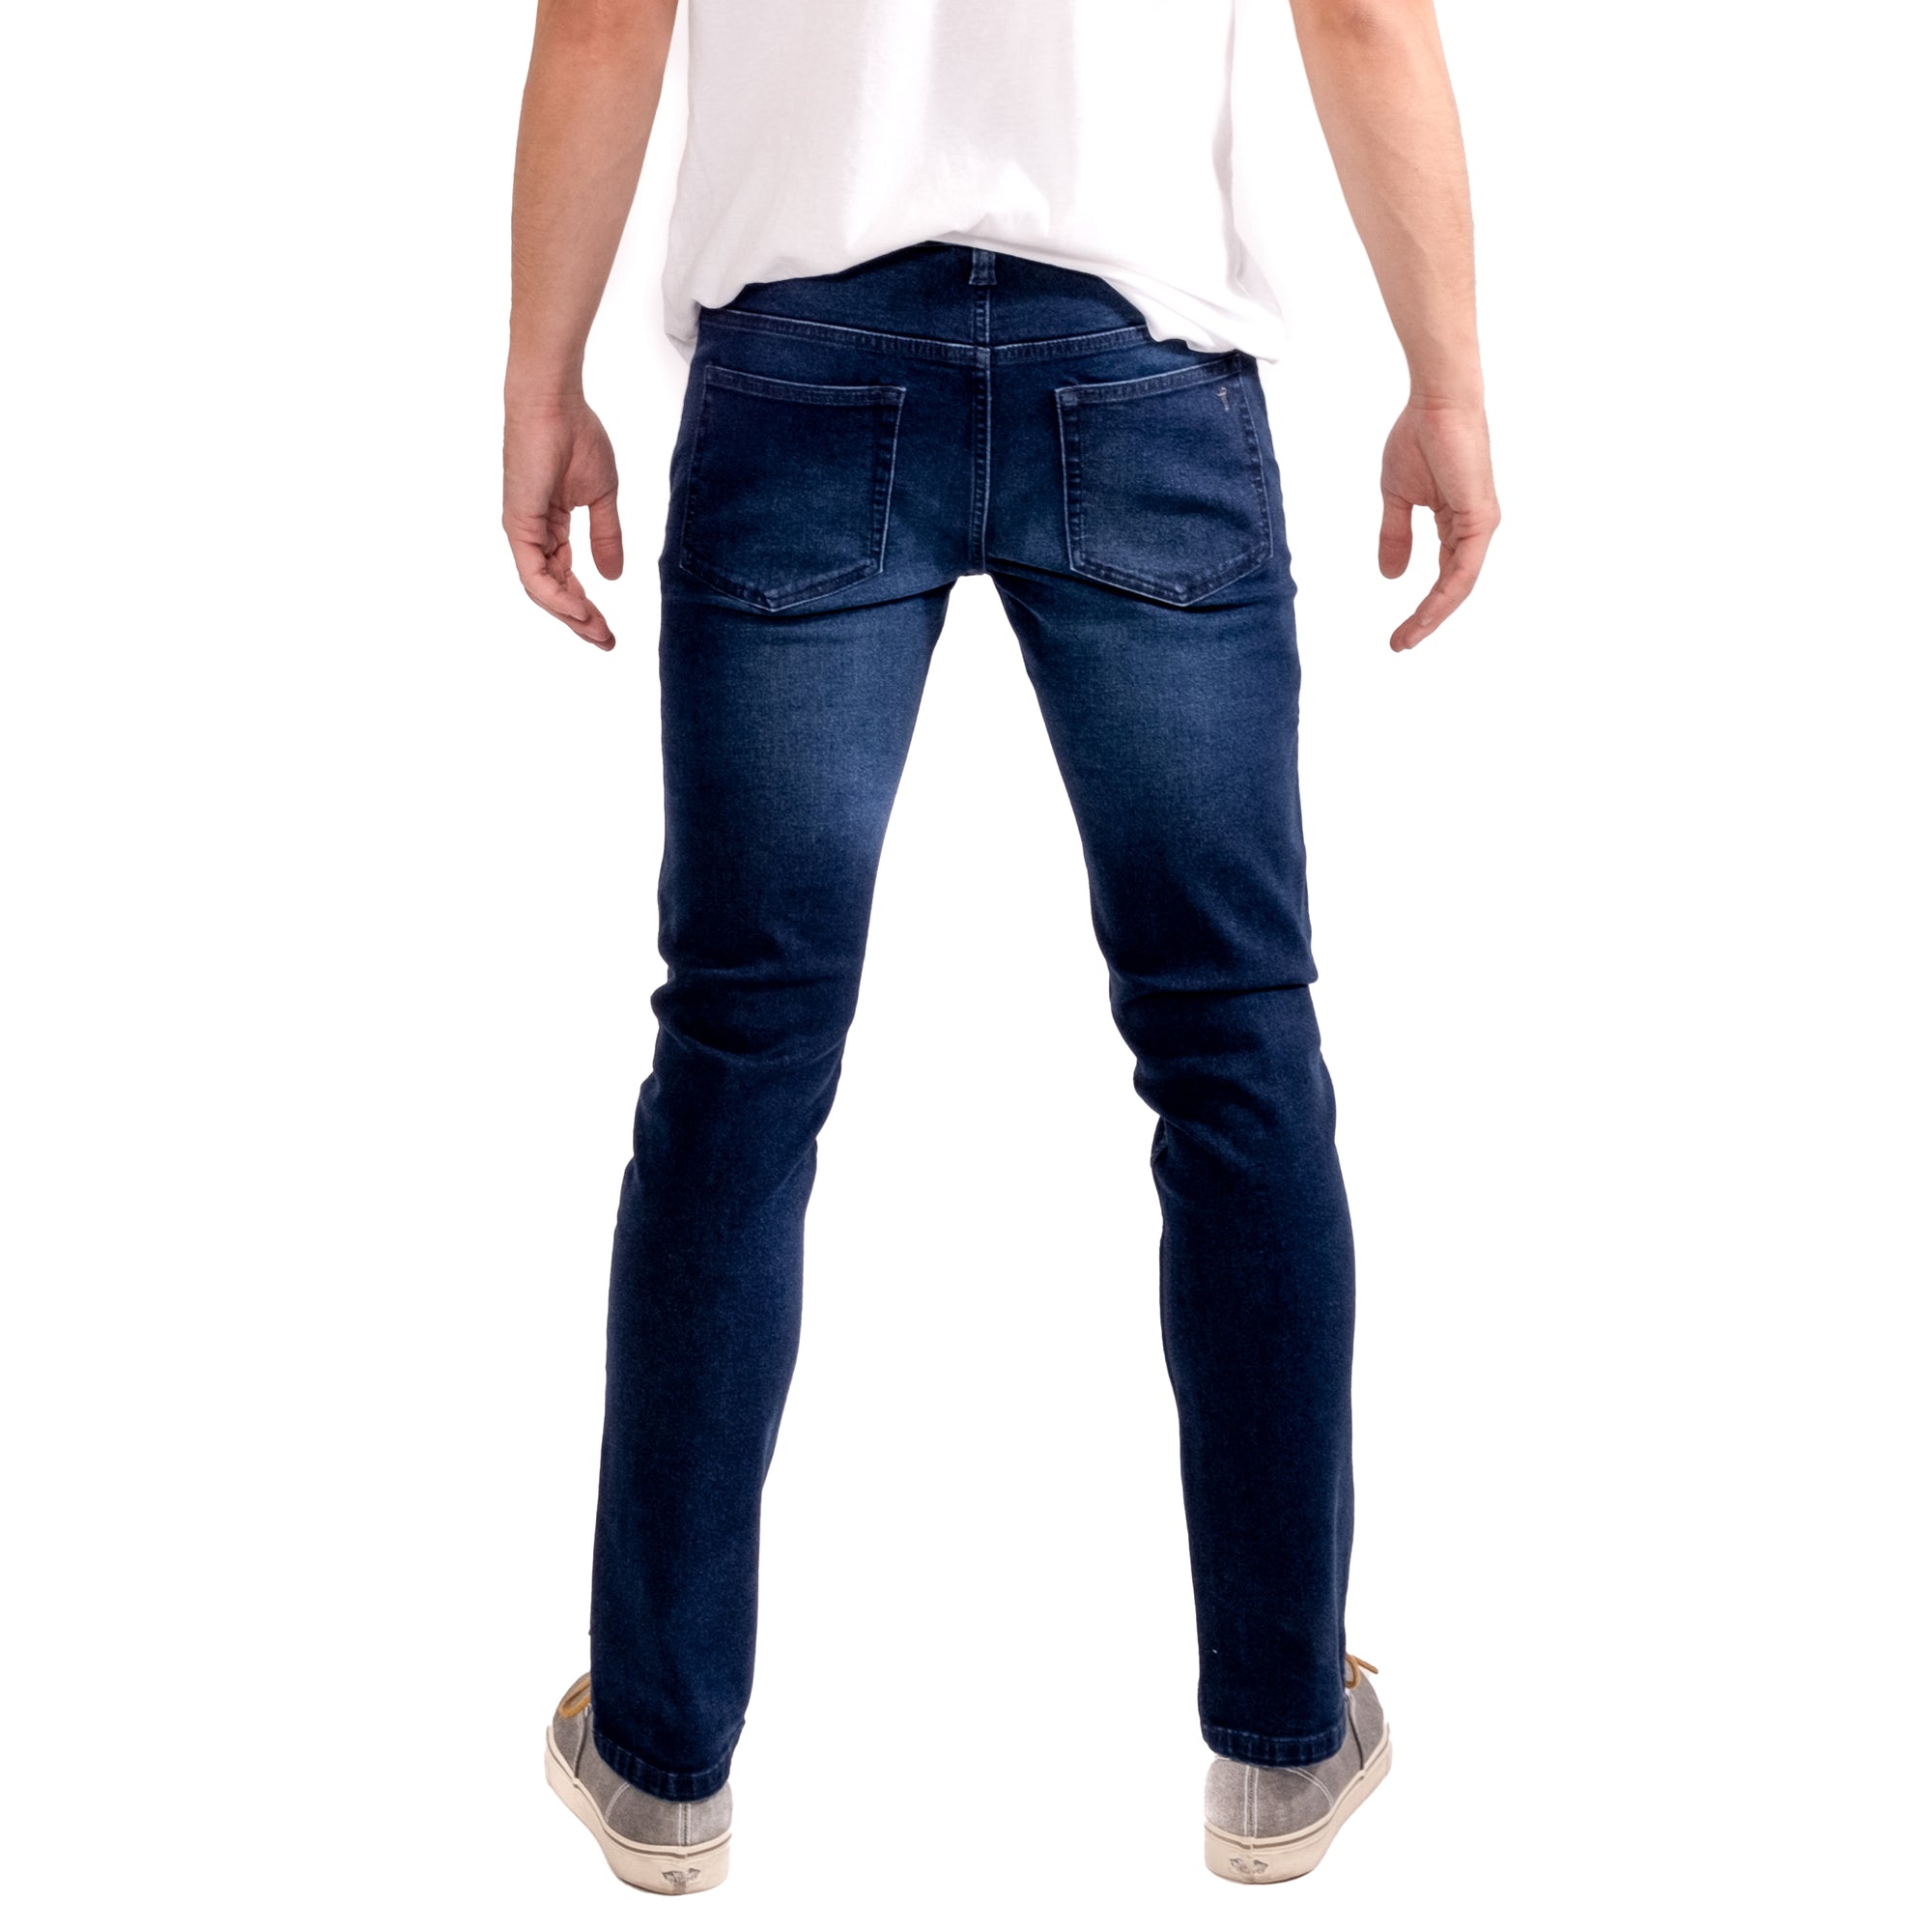 Skinny Fit / Knight - Dark Blue Skinny Jeans | The Perfect Jean